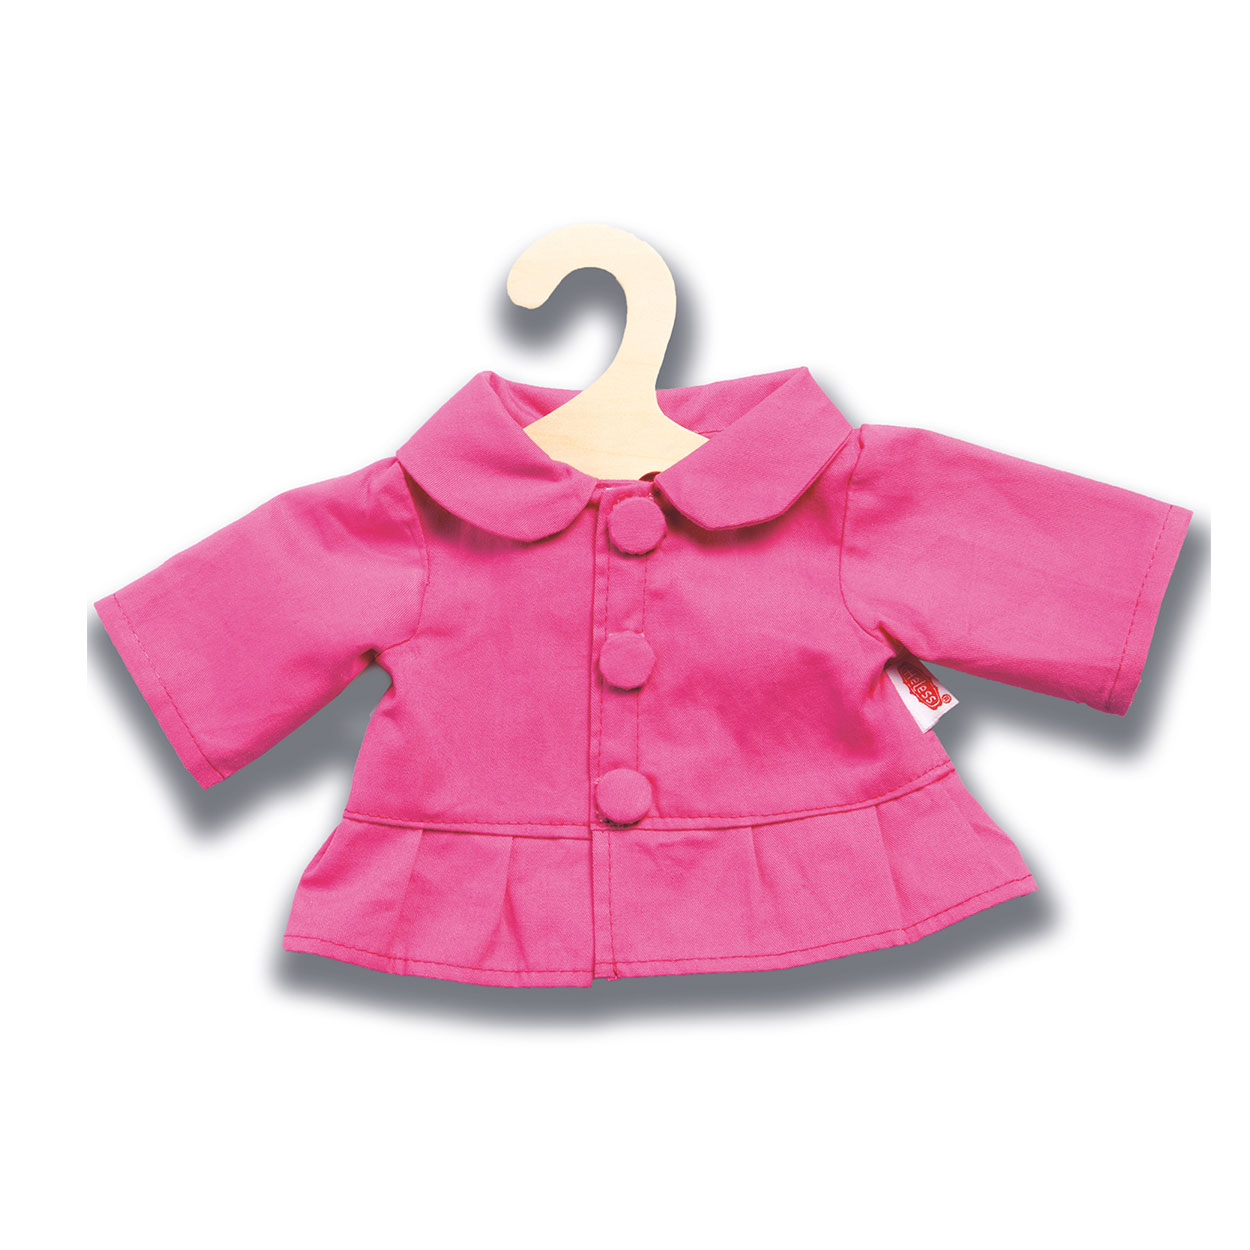 Manteau de poupée Pinky, 28-33 cm